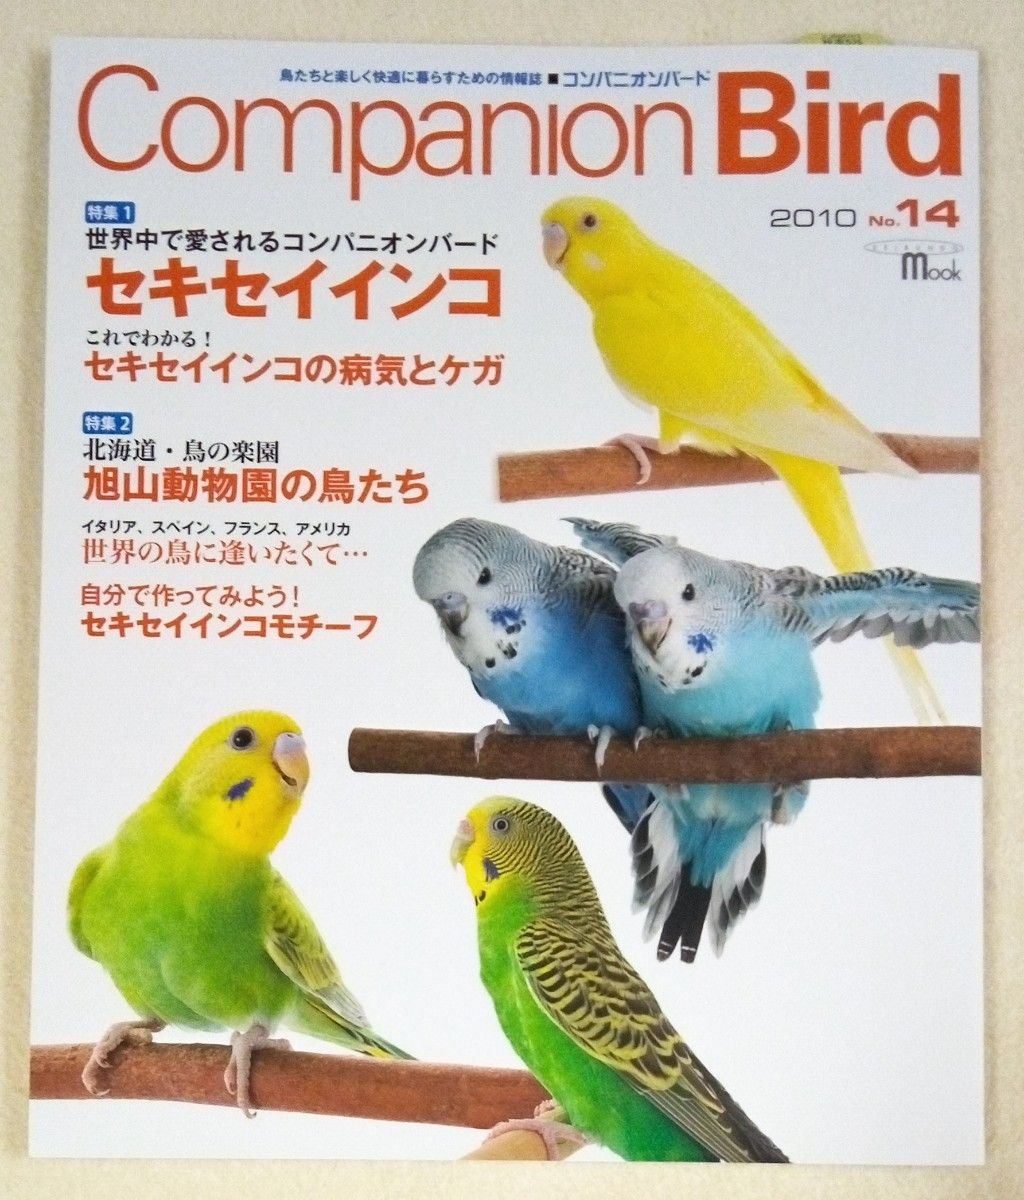 Companion Bird　コンパニオンバード　No.14